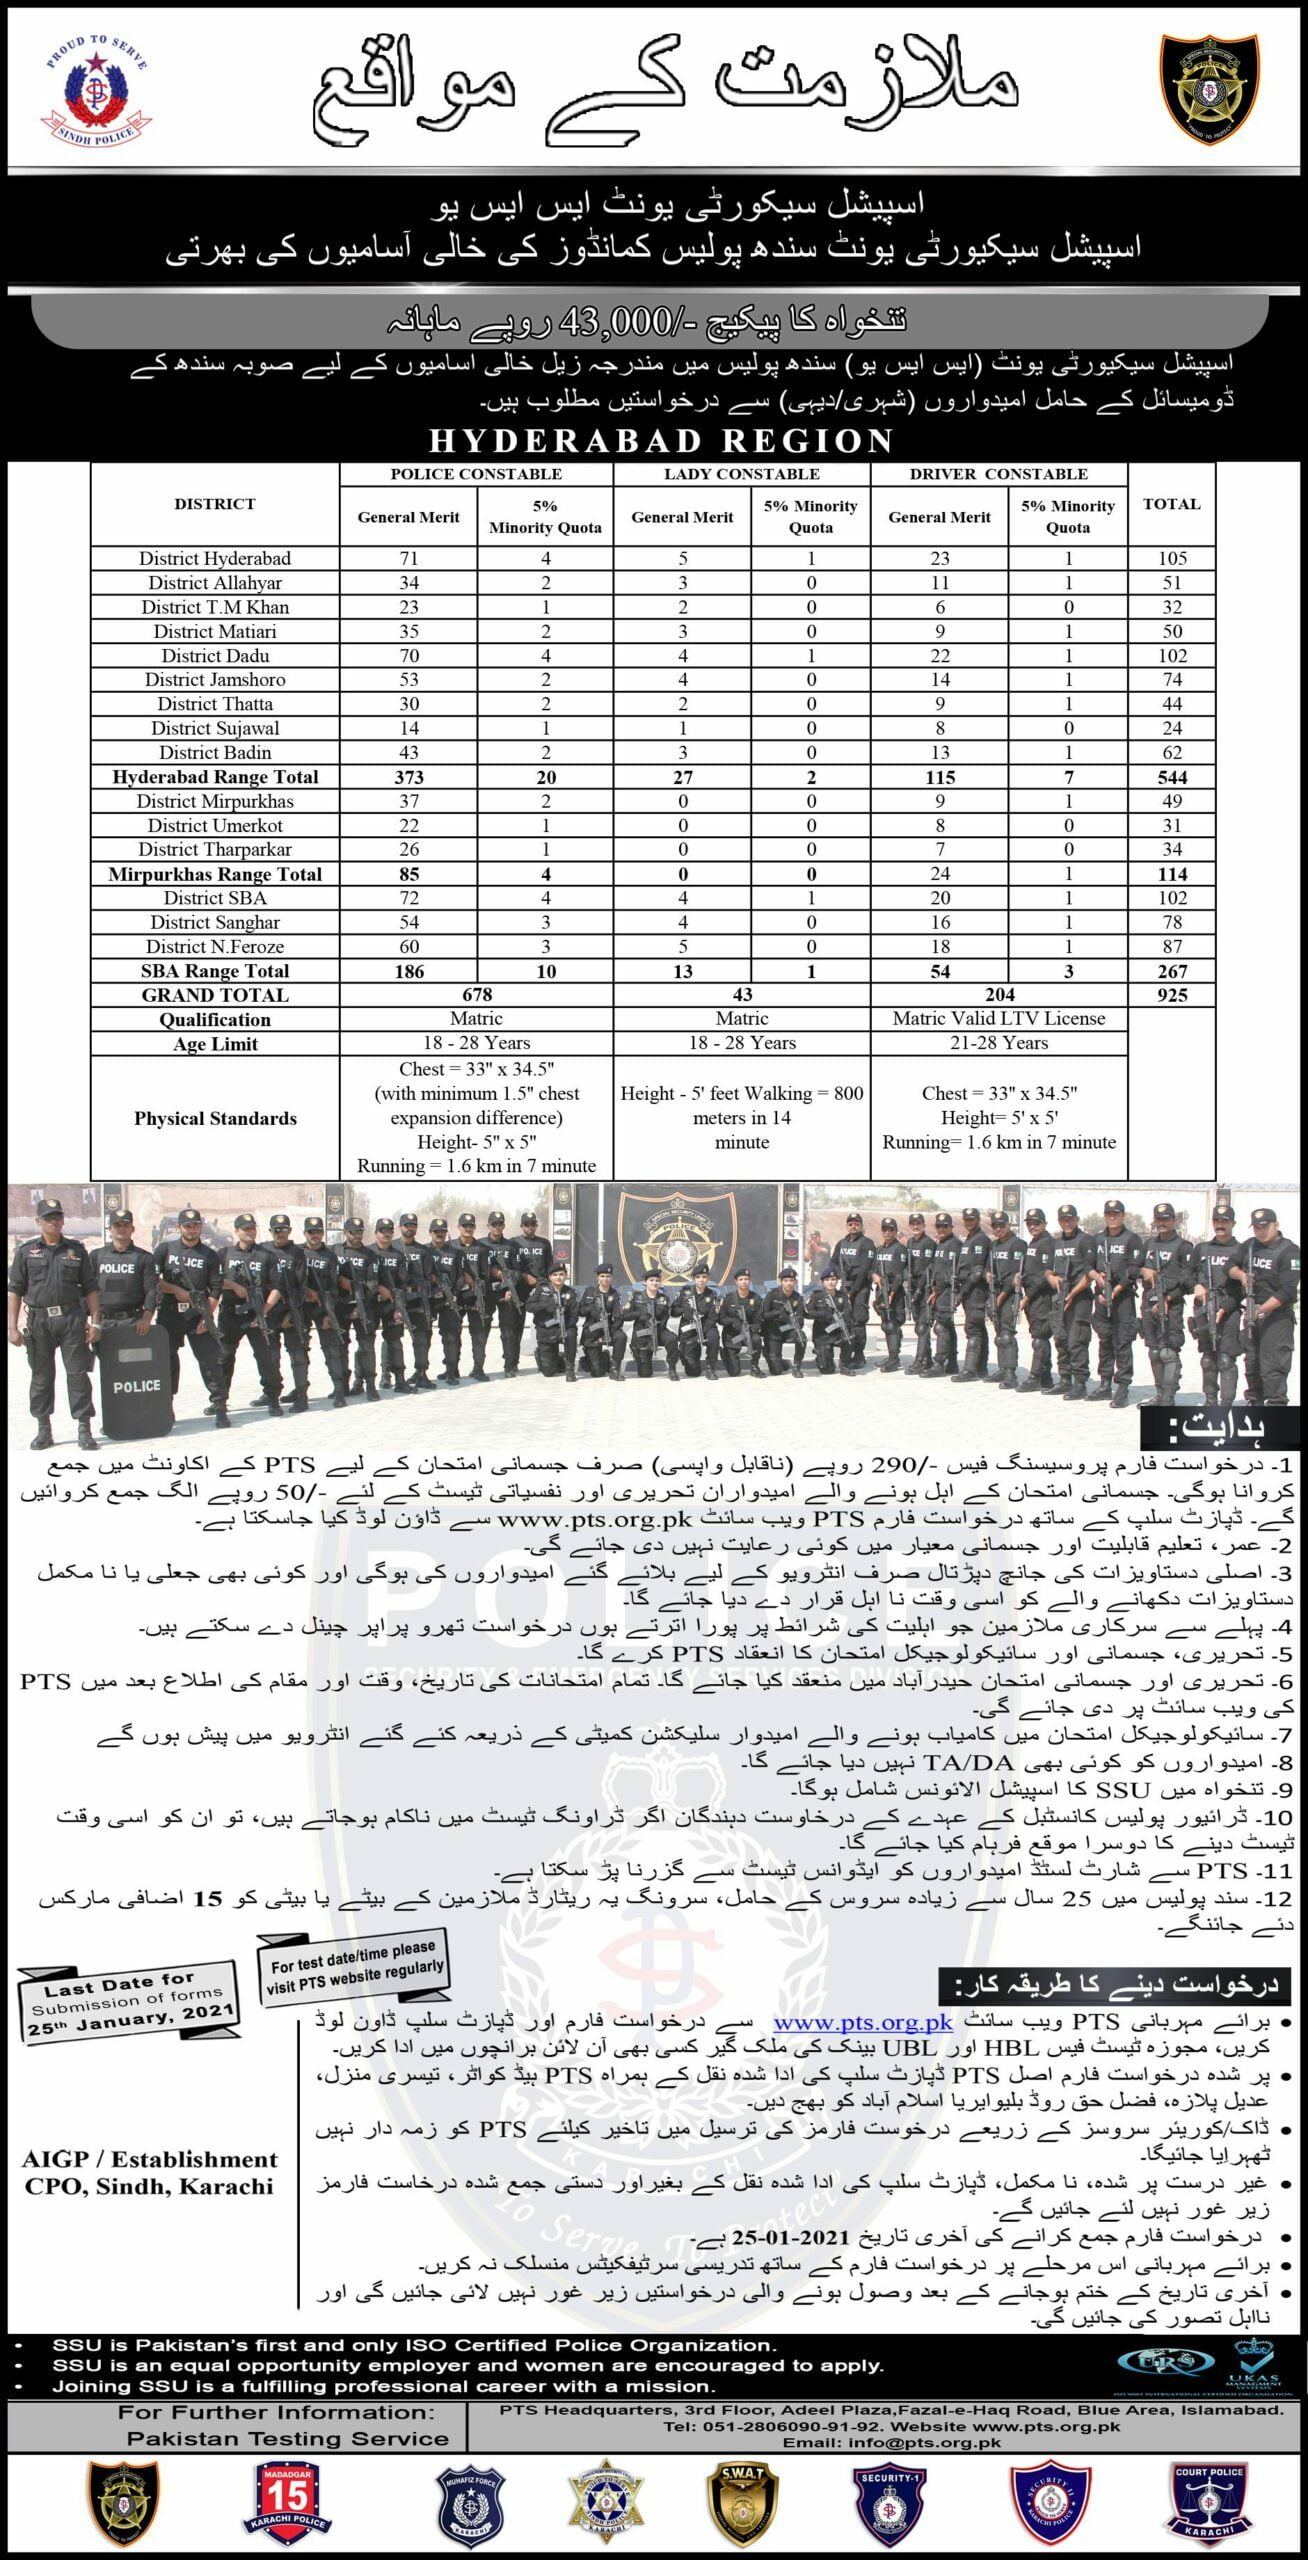 Sindh Police SSU Commandos, Hyderabad Region (SPD-HR-VIII) advertainment in Urdu